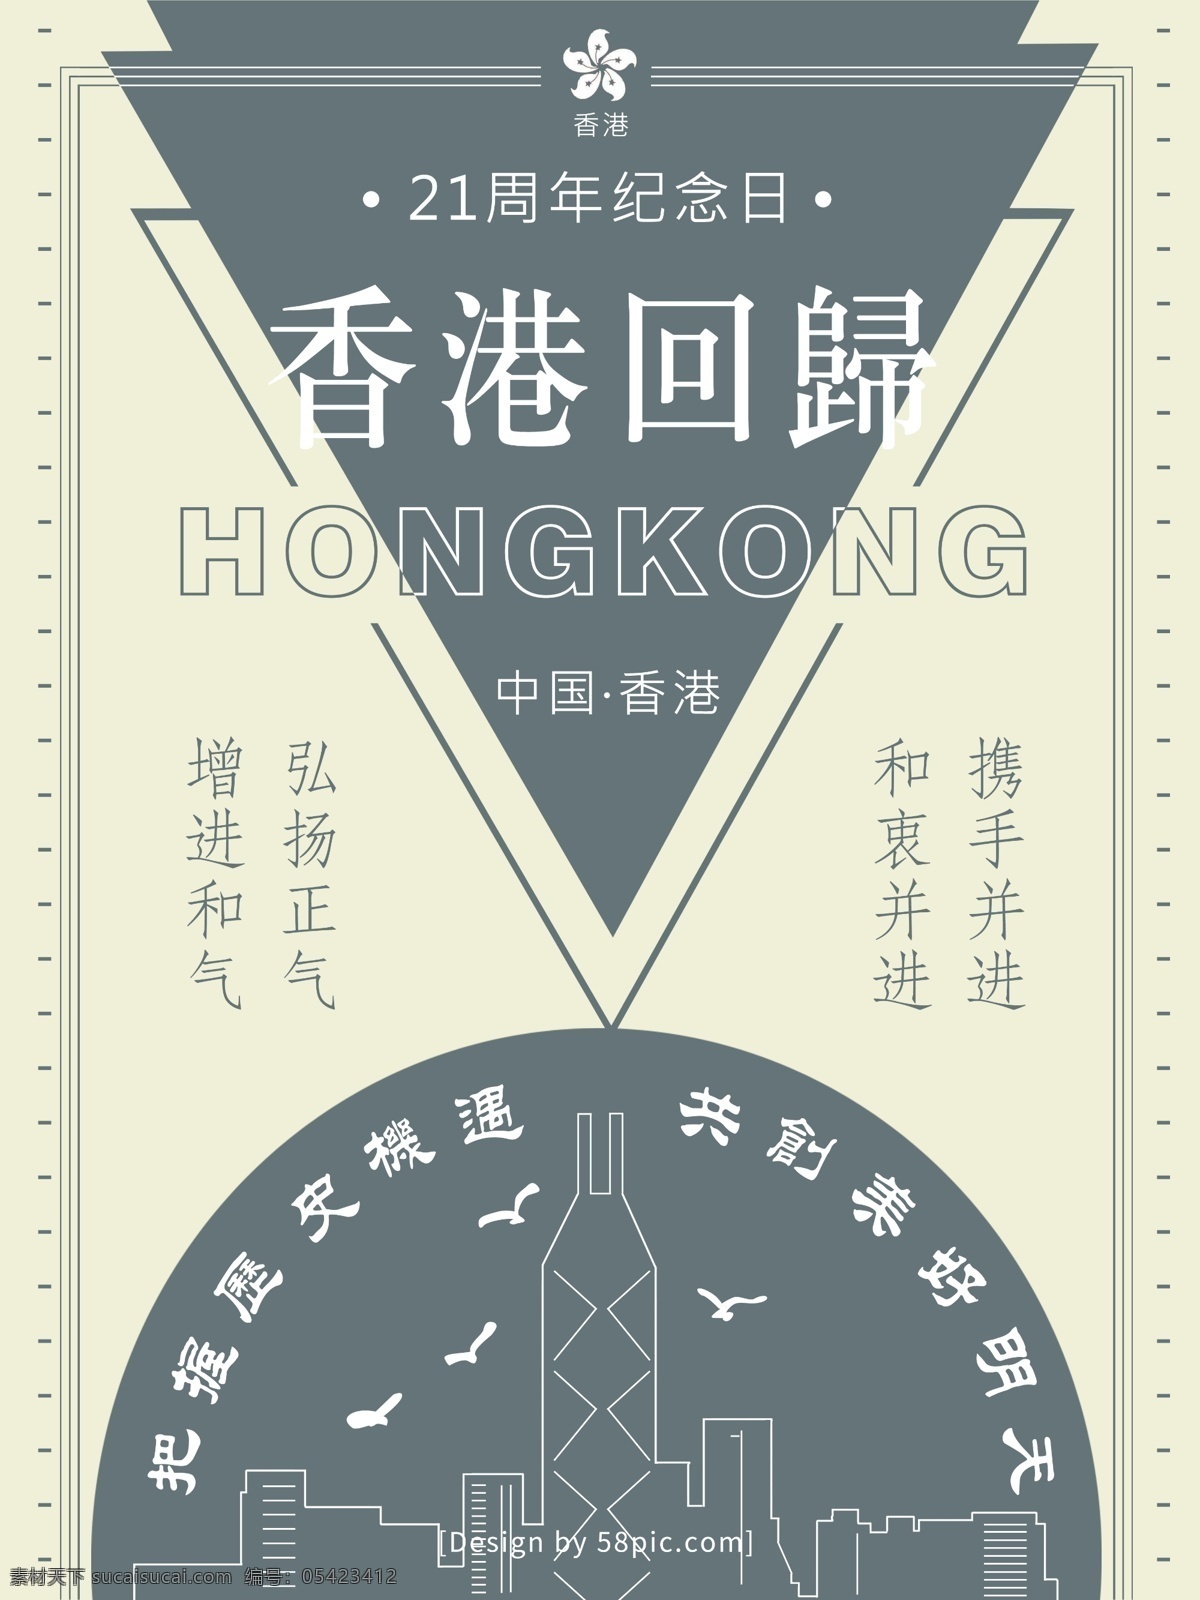 香港 回归 周年 中国香港 美好 明天 简约 海报 香港回归 21周年 纪念日 三角形 中国 美好明天 携手并进